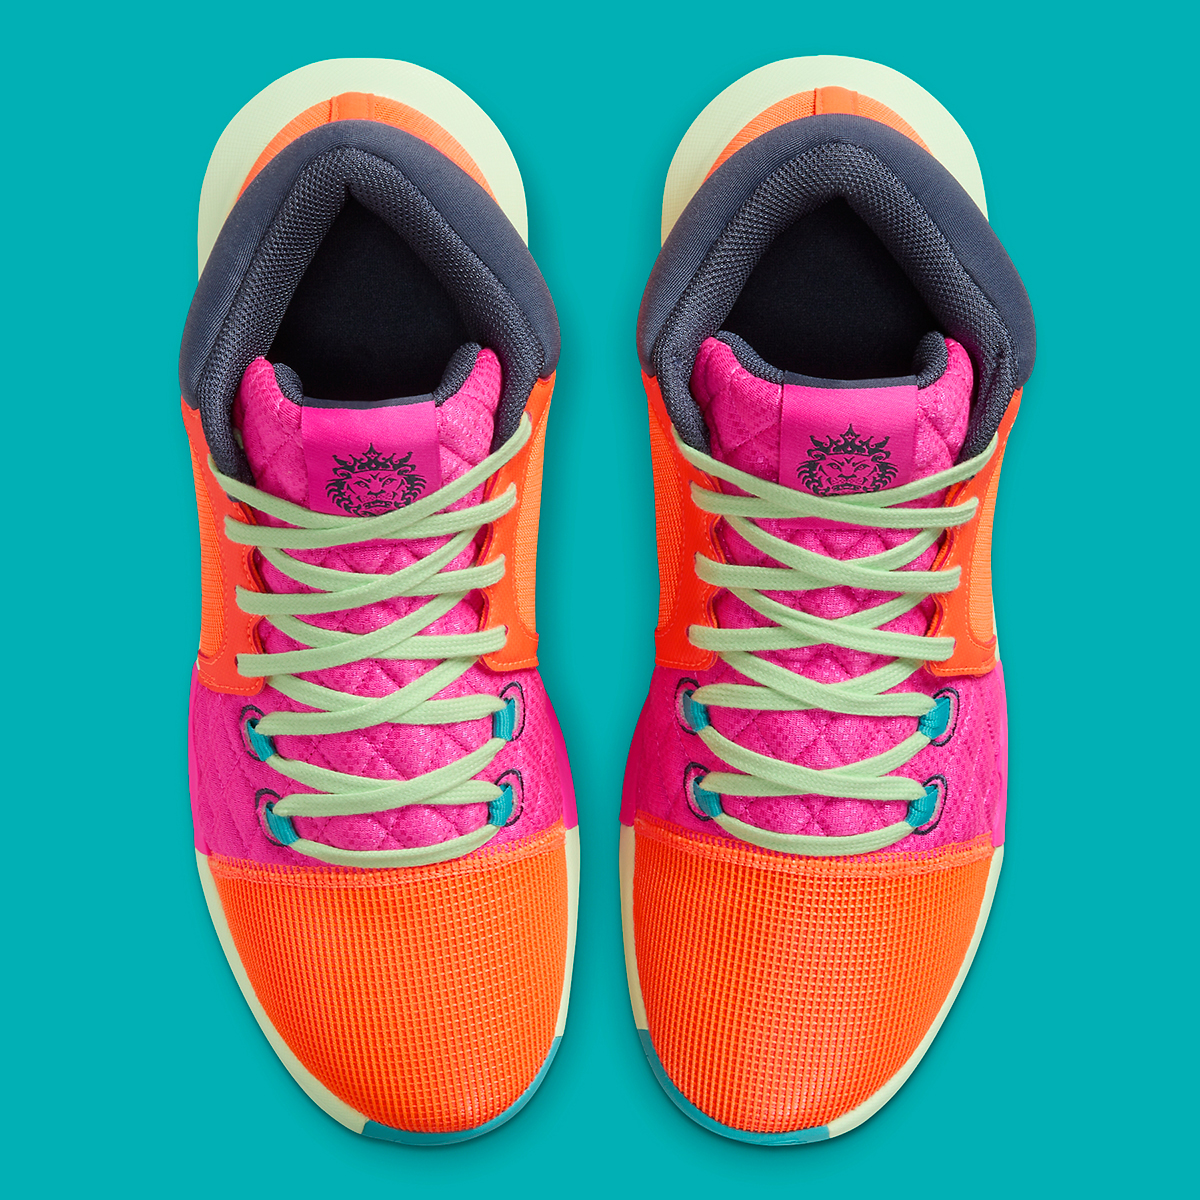 Nike Lebron Witness 8 Orange Teal Pink Fb2239 800 7